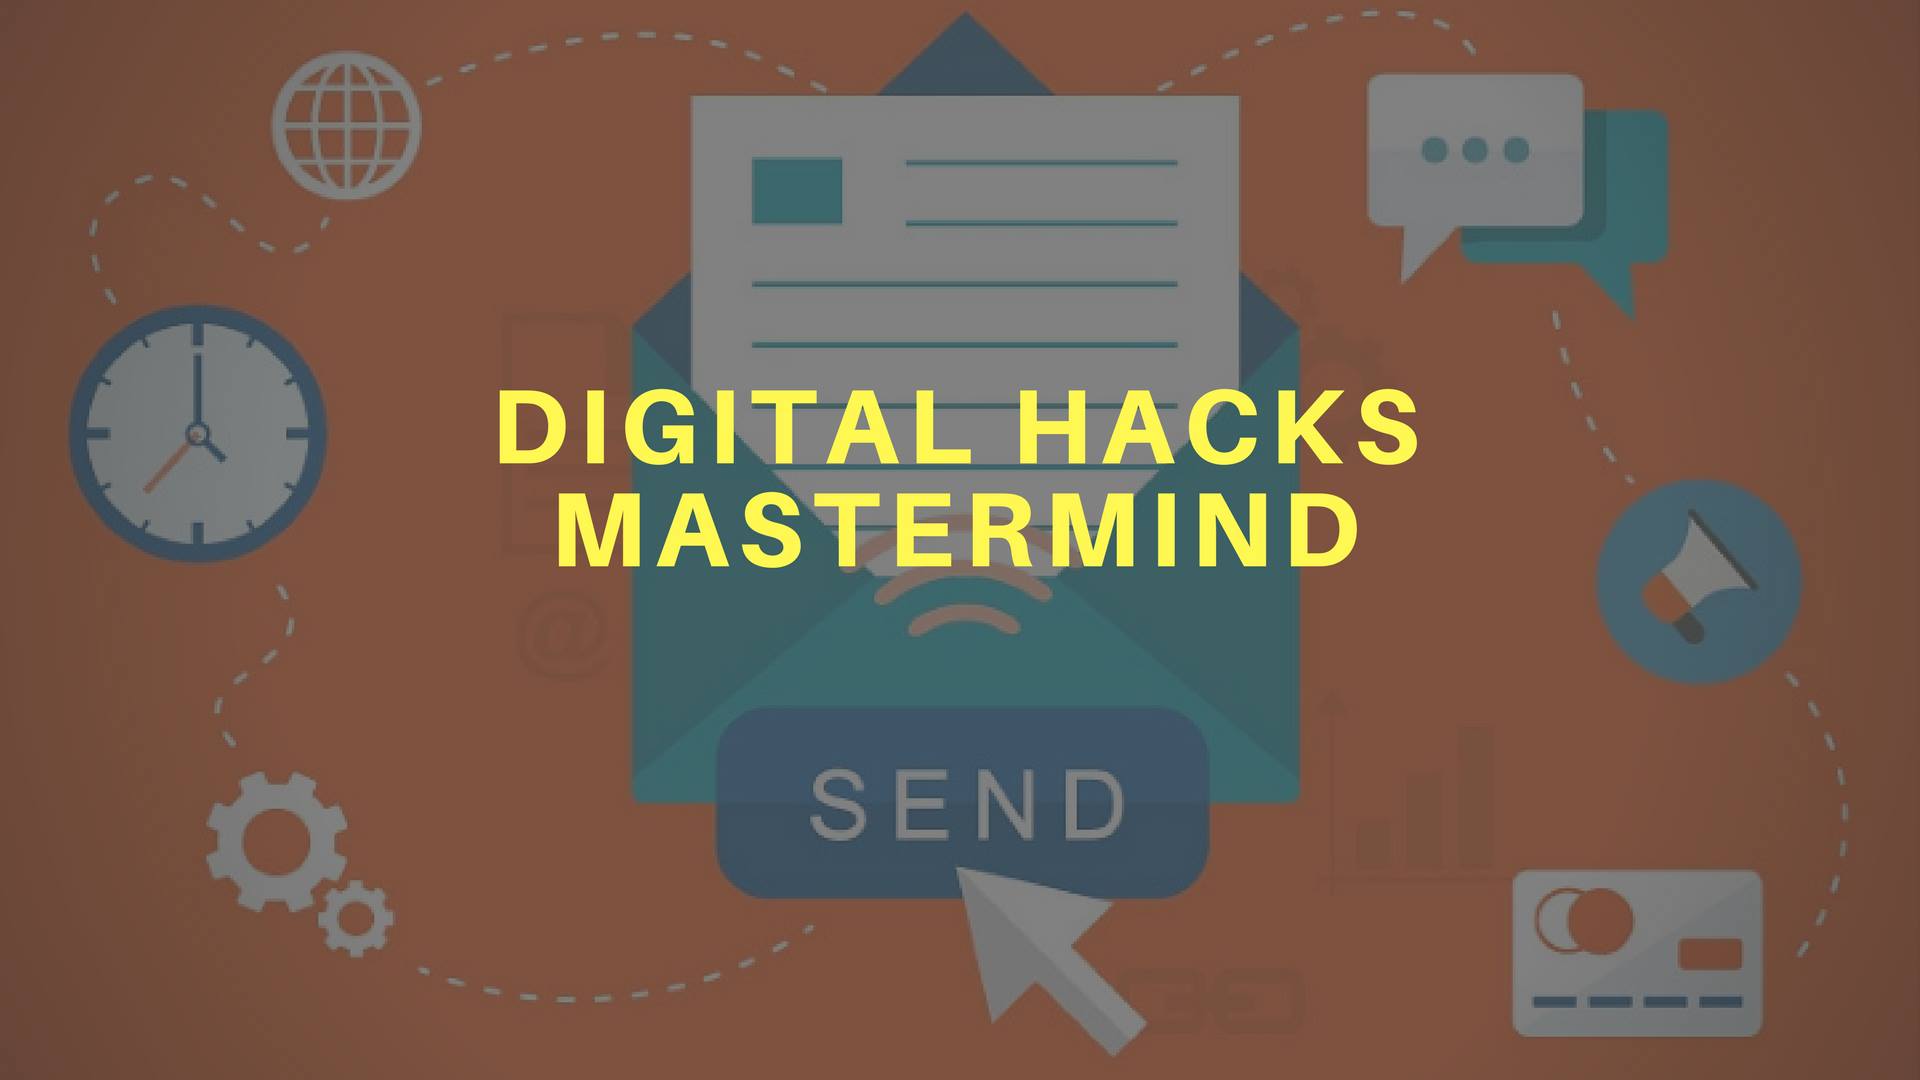 Digital hacks mastermind